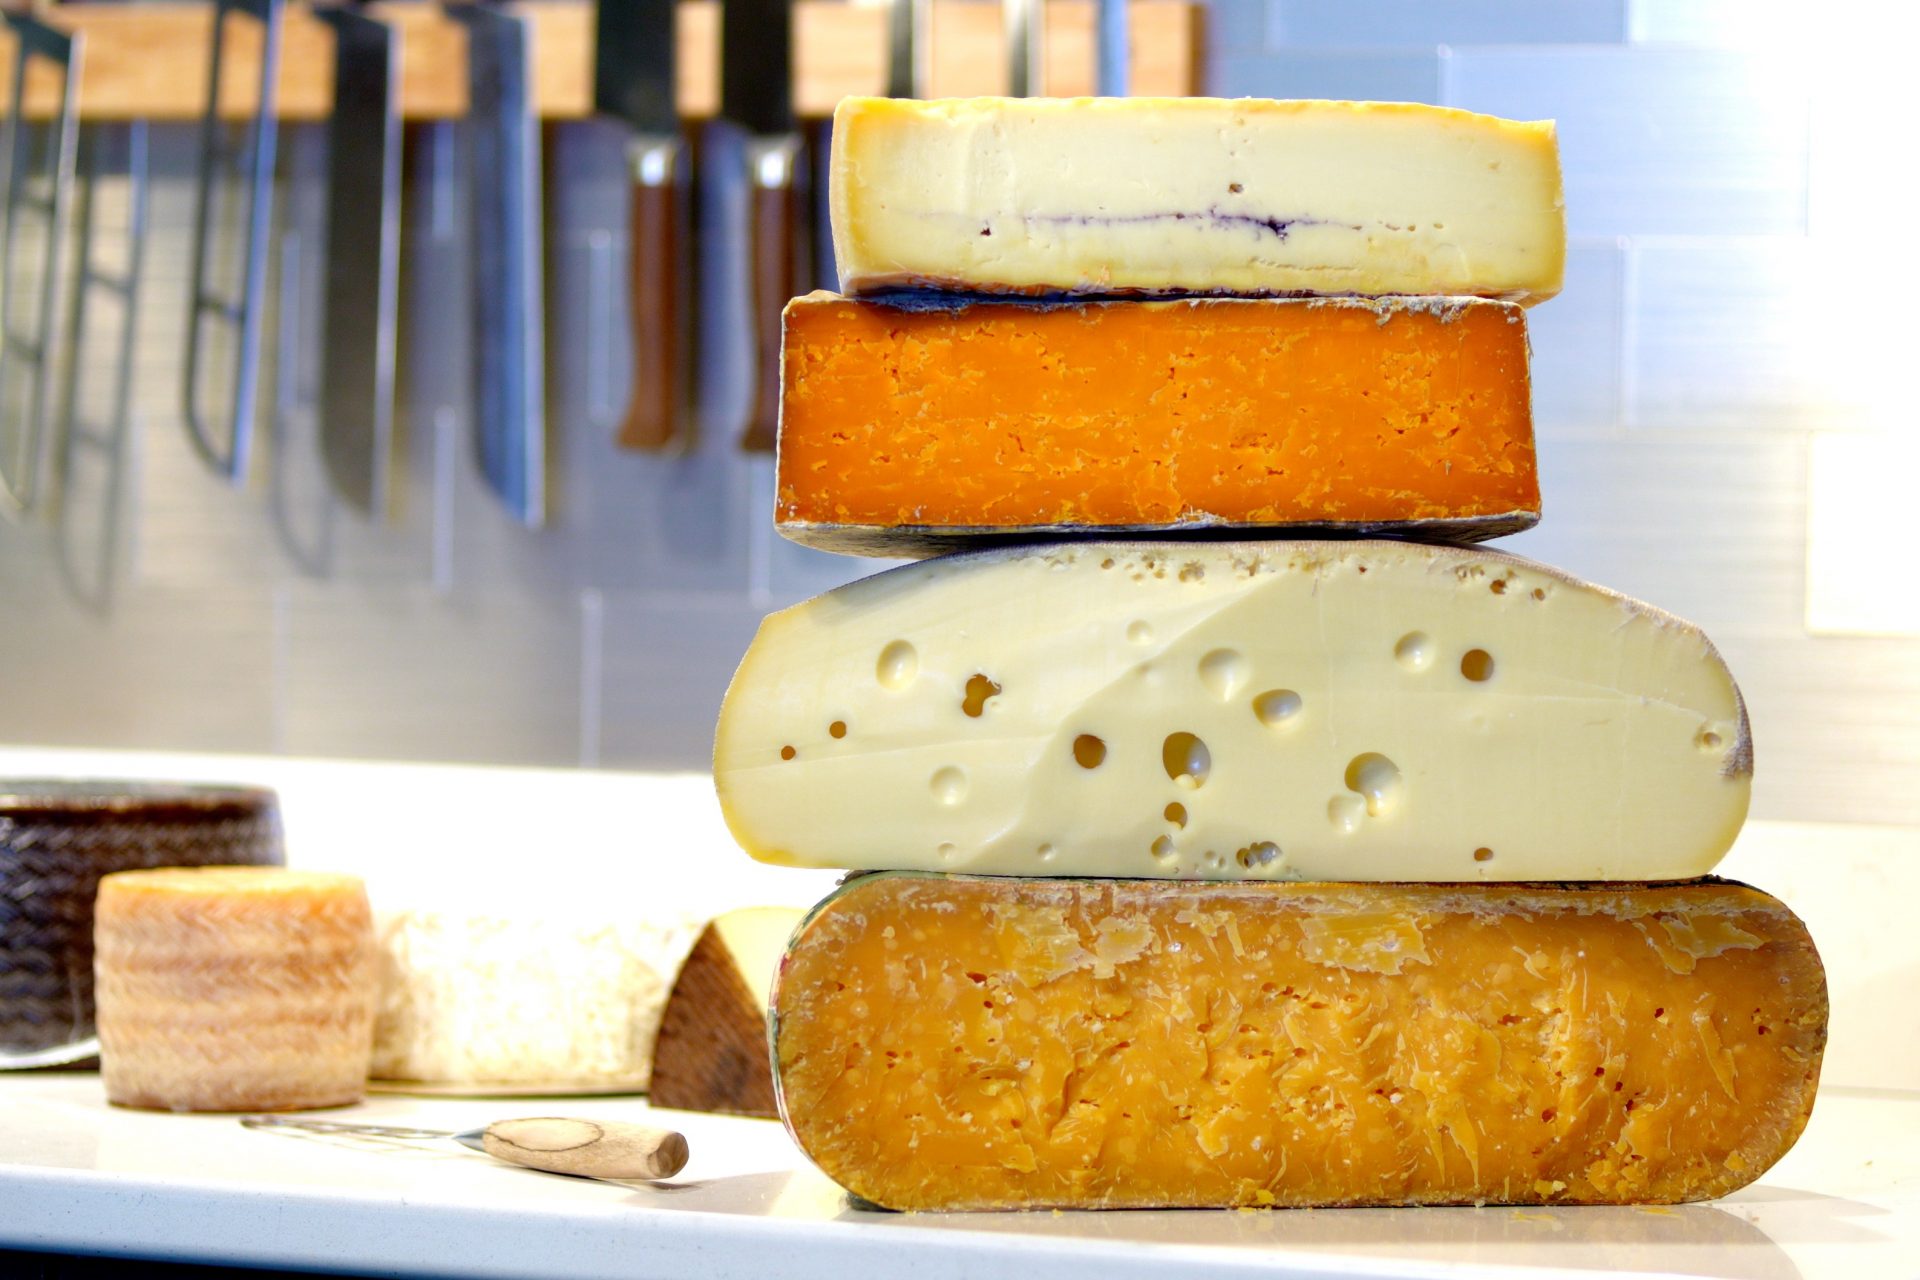 Die gleichen Bakterien, die zur Reifung von Käse verwendet werden, leben auch auf unserer Haut!